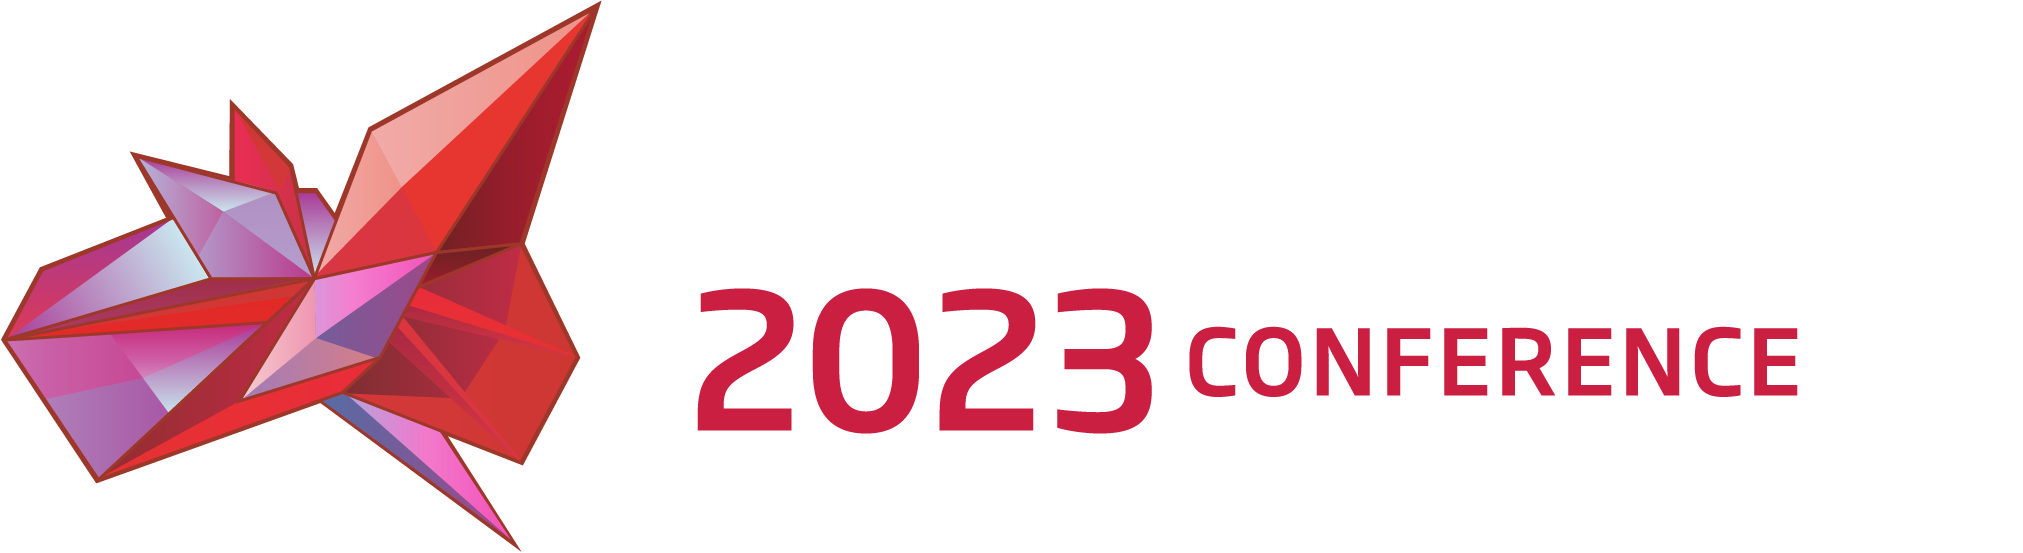 Metascience 2023